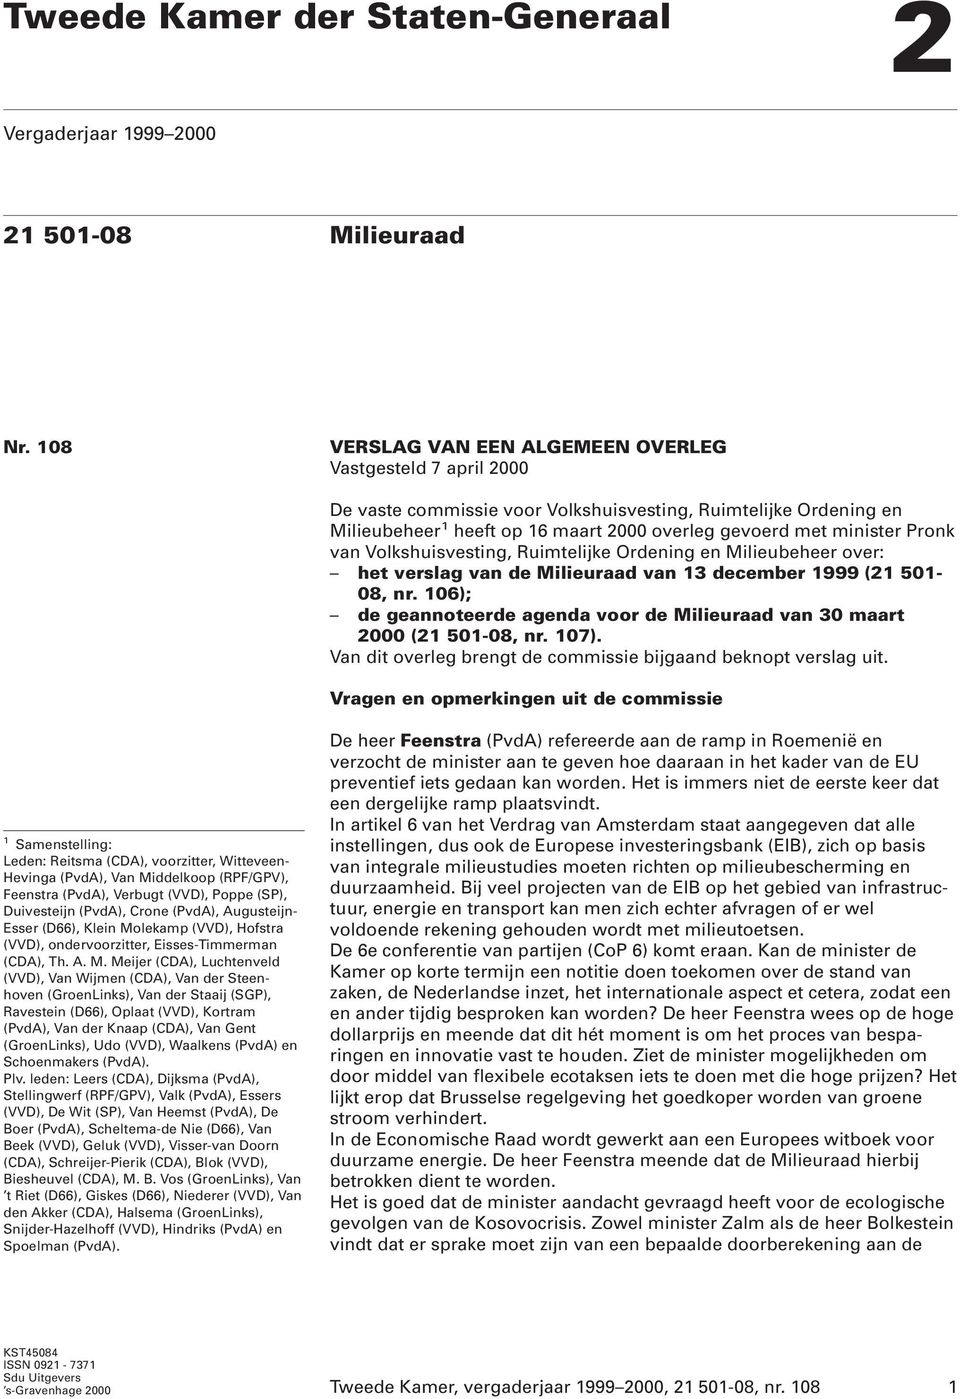 Pronk van Volkshuisvesting, Ruimtelijke Ordening en Milieubeheer over: het verslag van de Milieuraad van 13 december 1999 (21 501-08, nr.